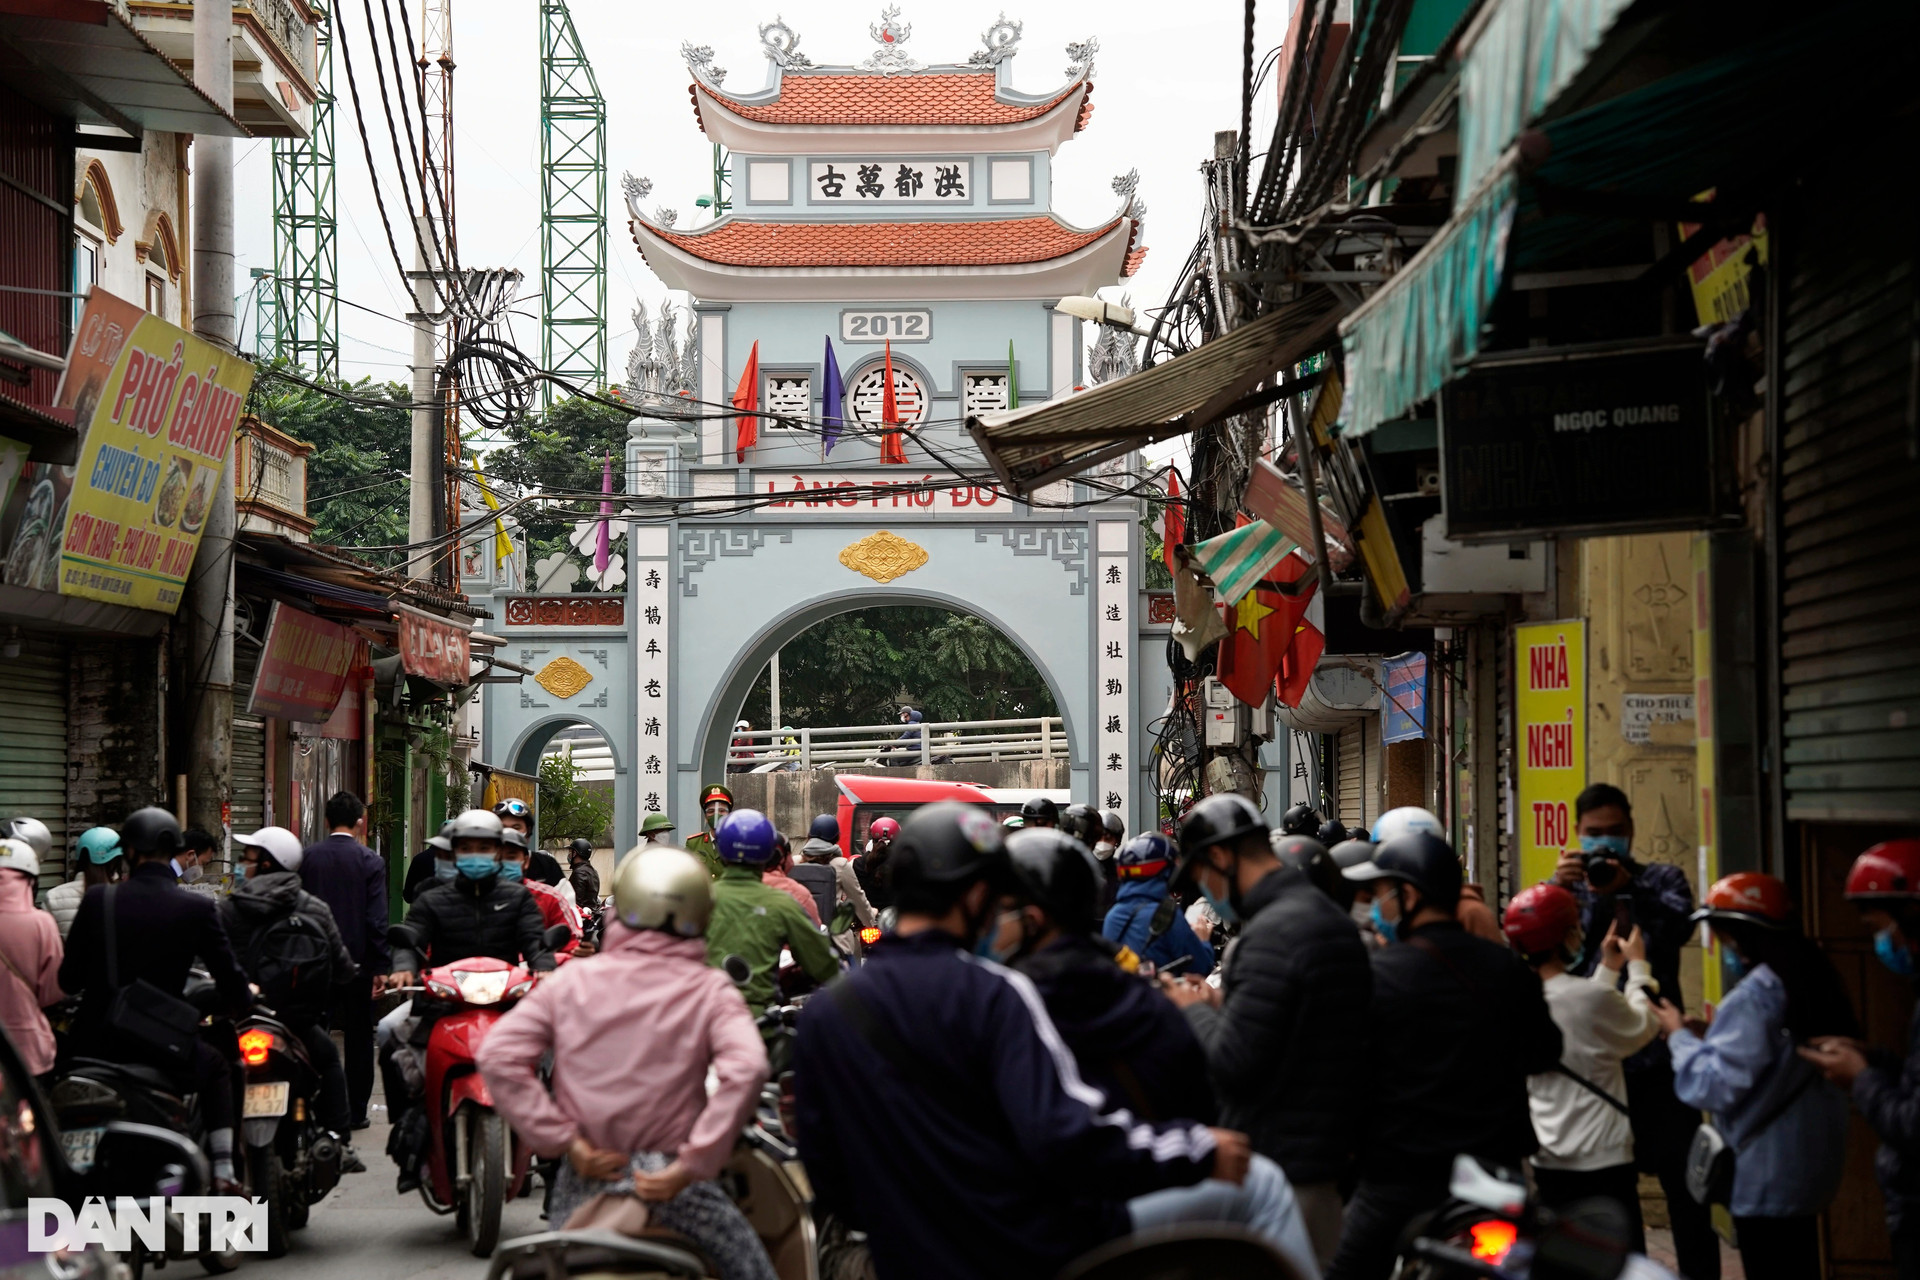 Hà Nội: Đông nghịt người quét QR Code tại ổ dịch Phú Đô - 1